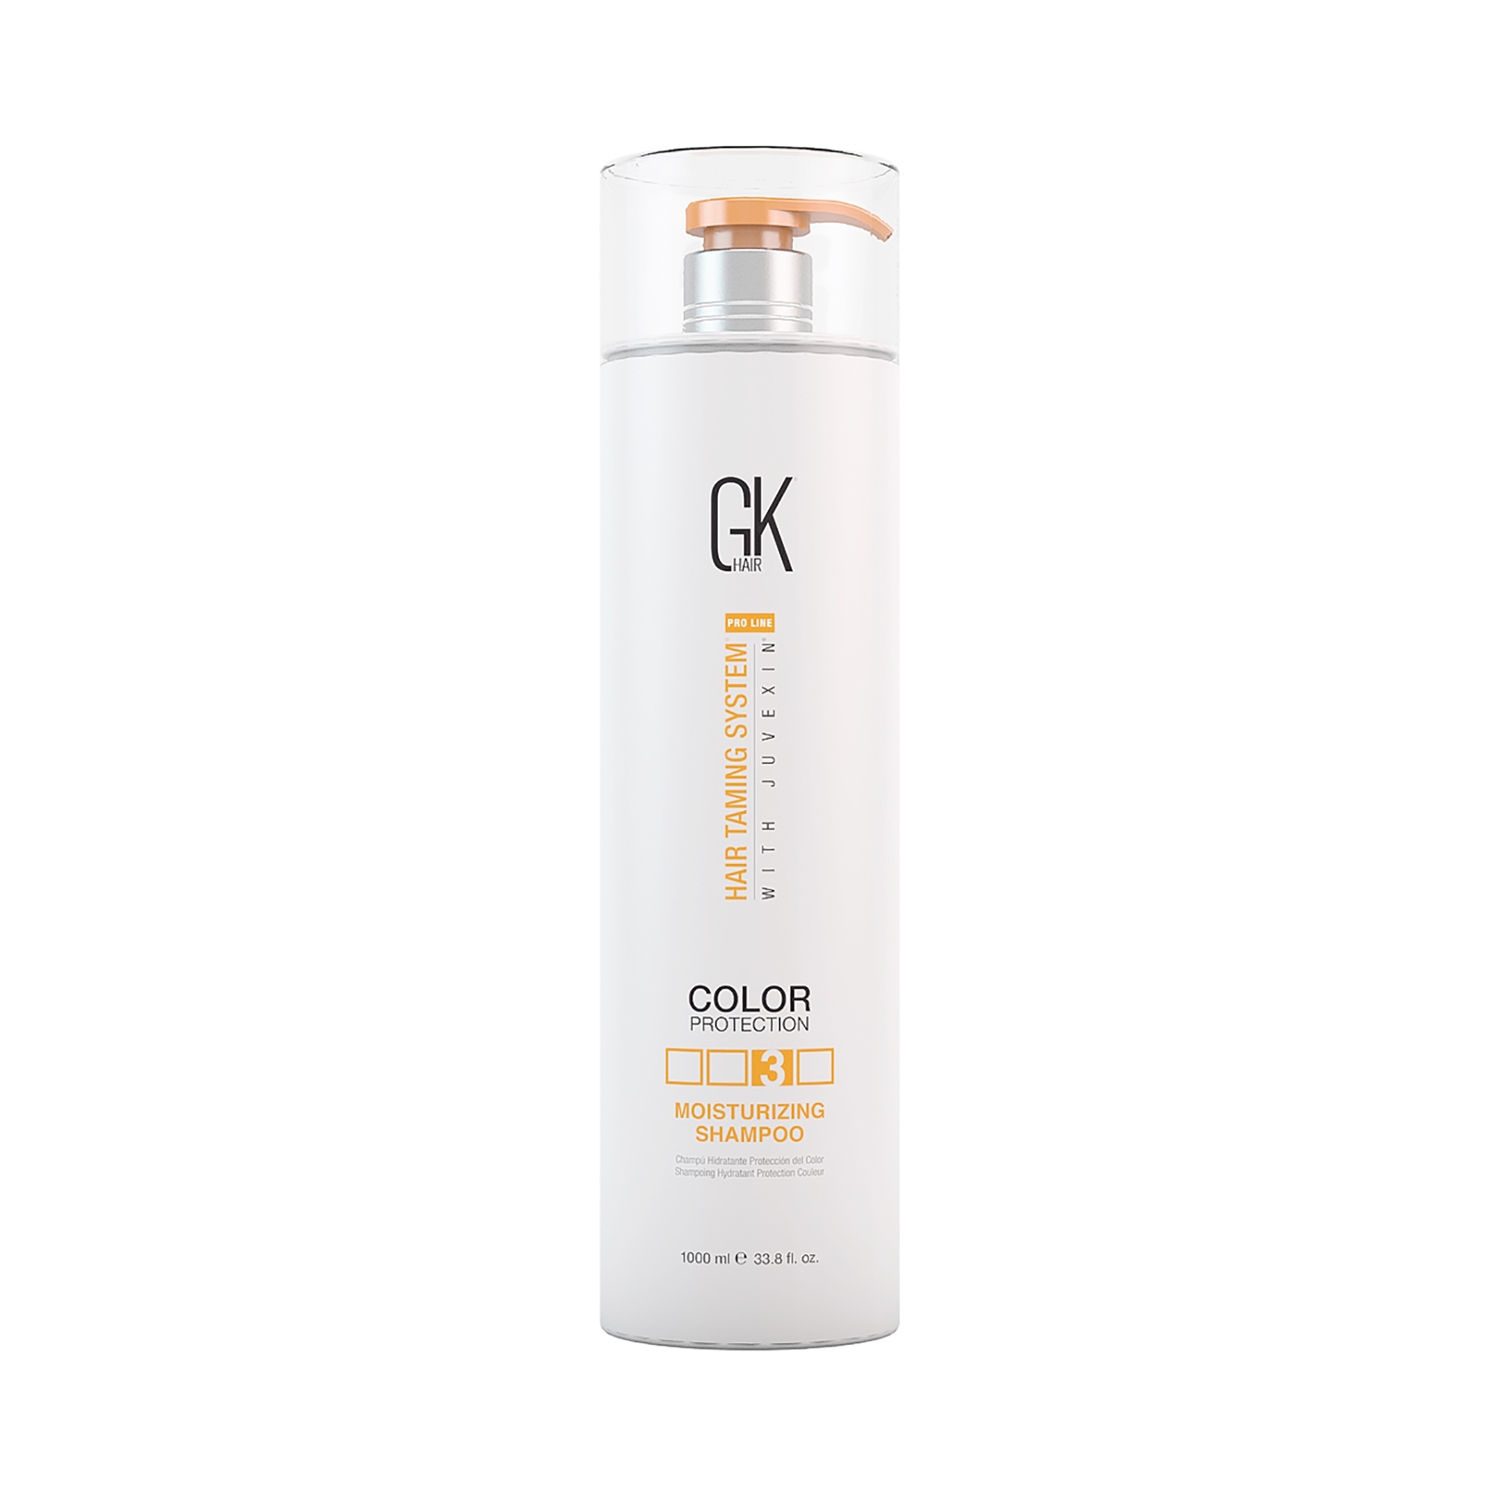 GK Hair | GK Hair Moisturizing Color Protection Shampoo (1000ml)